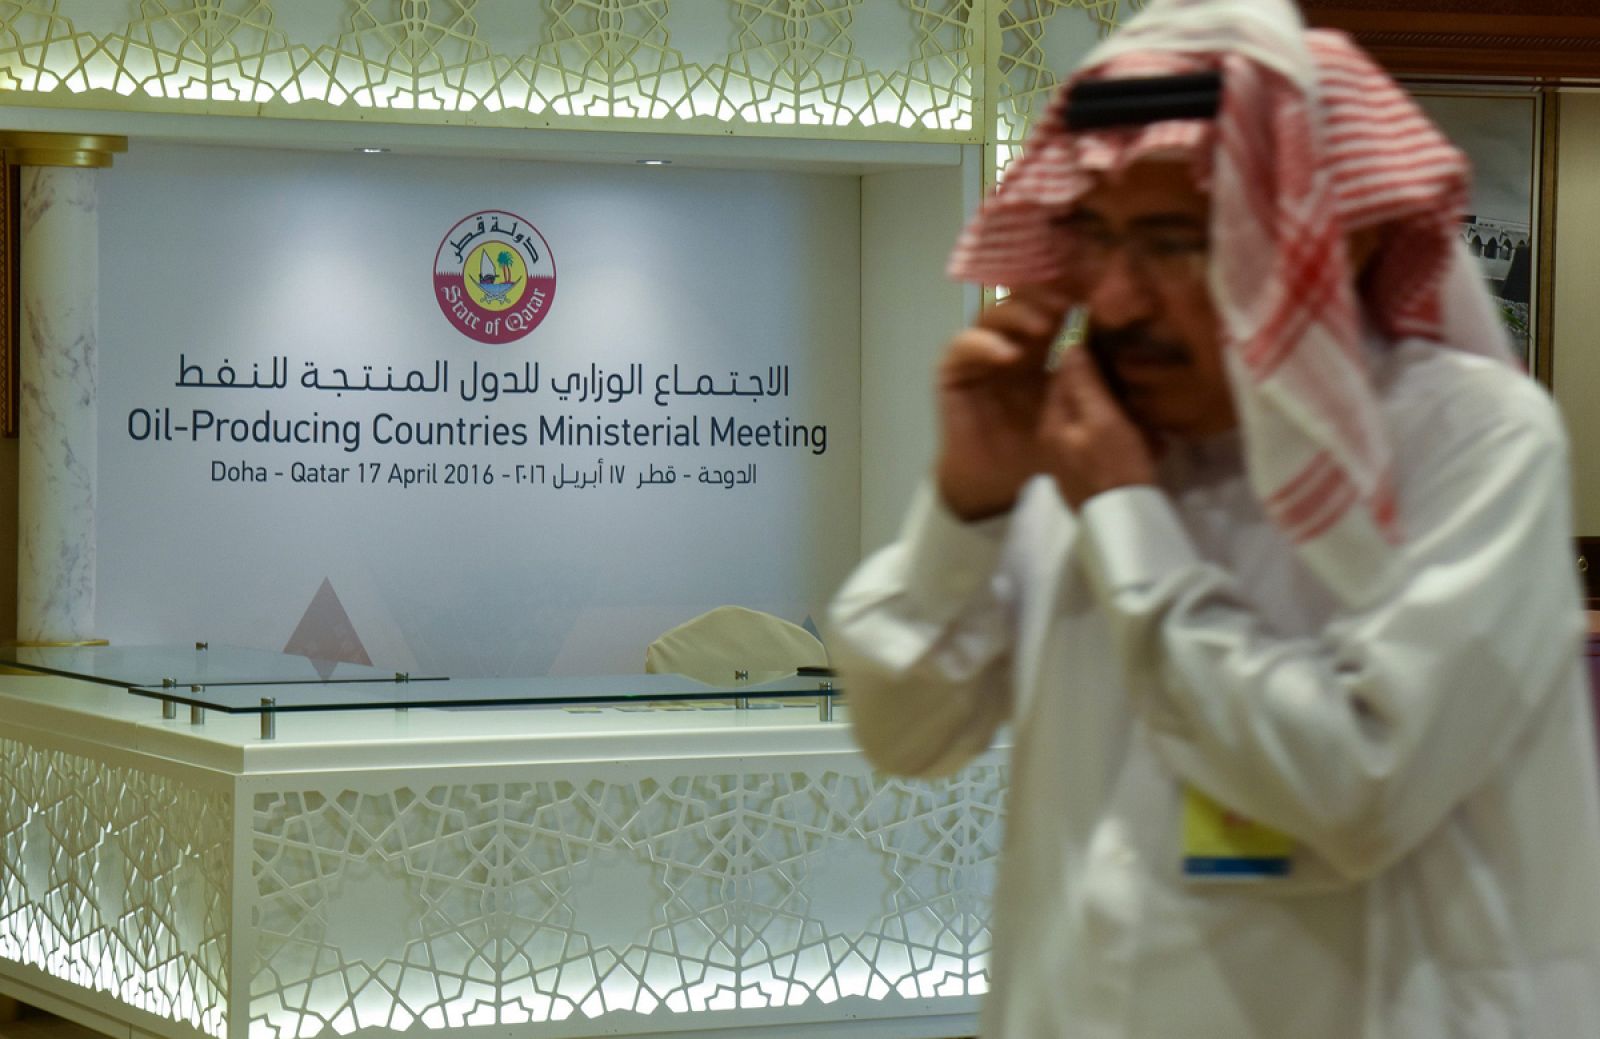 Reunión de los productores de petróleo en Doha, Catar